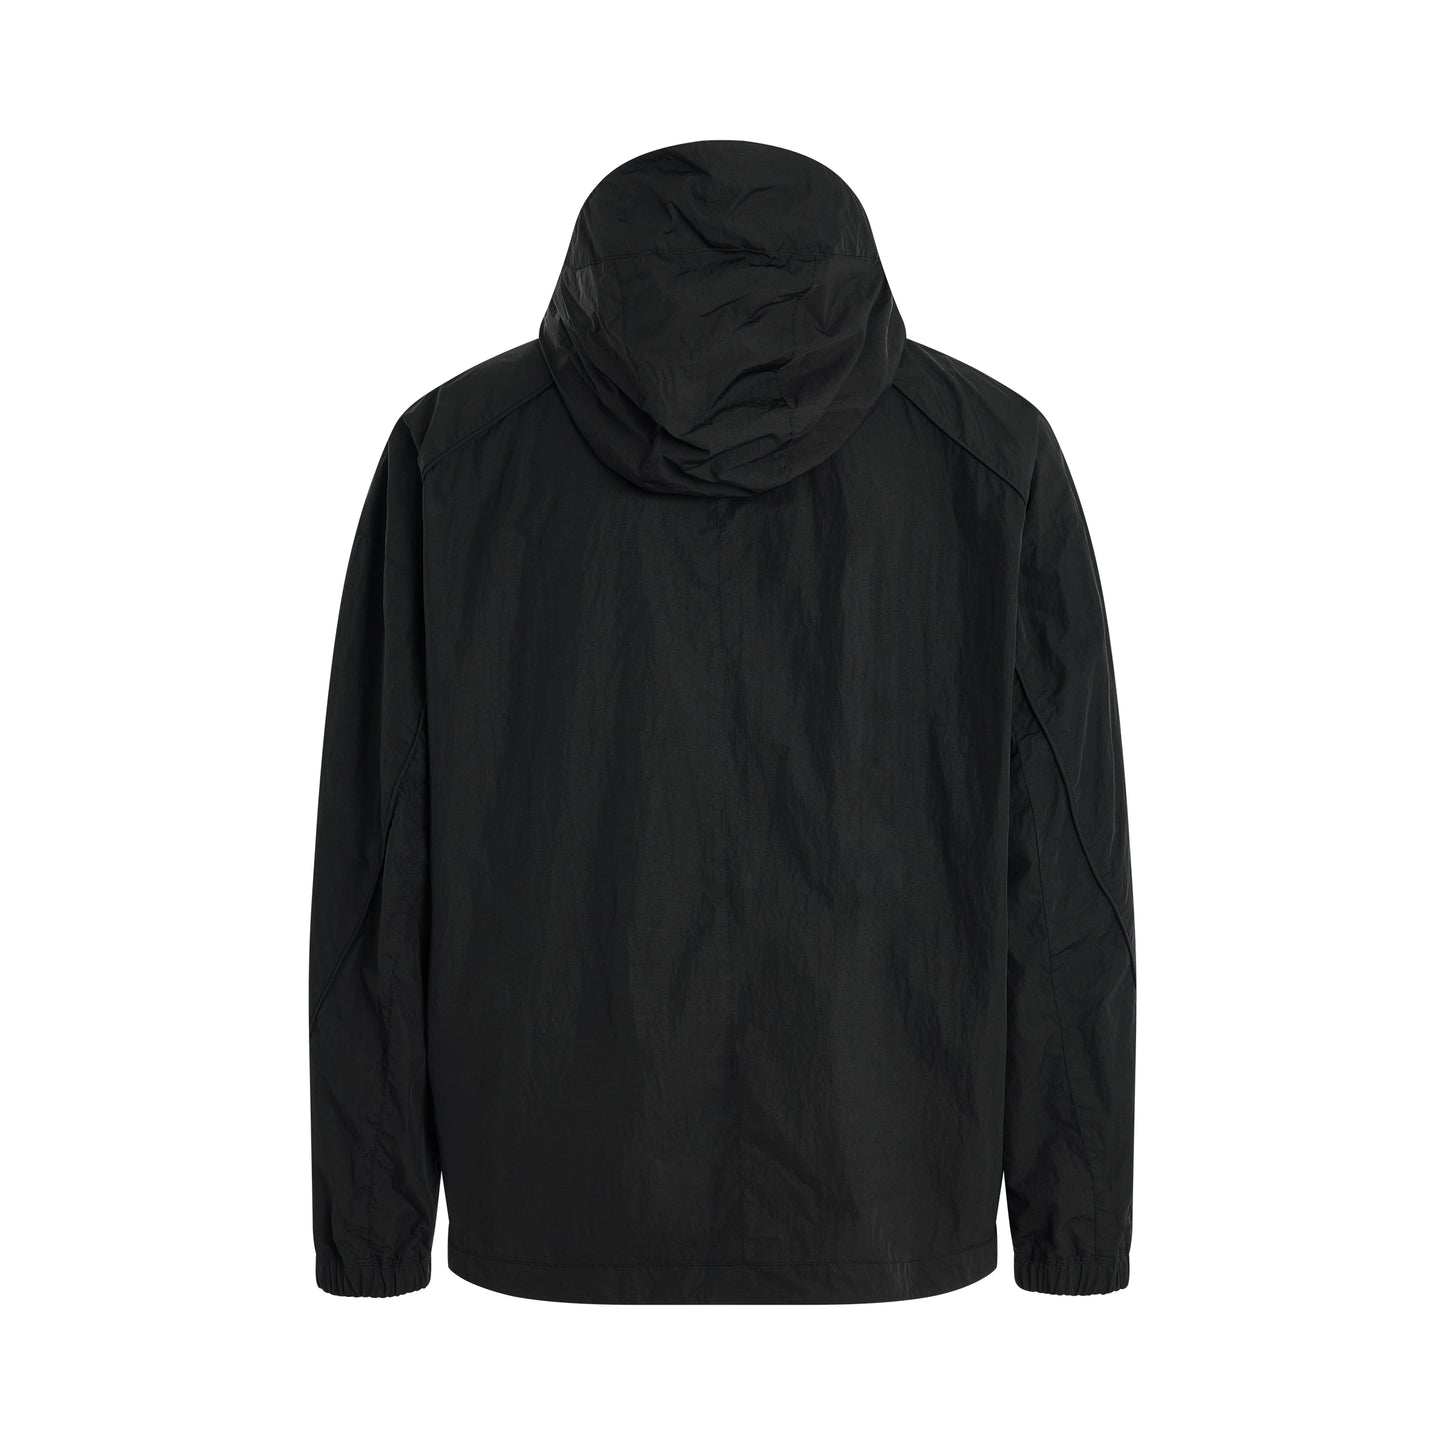 Hidden Pocket Side Zipper Jacket in Black